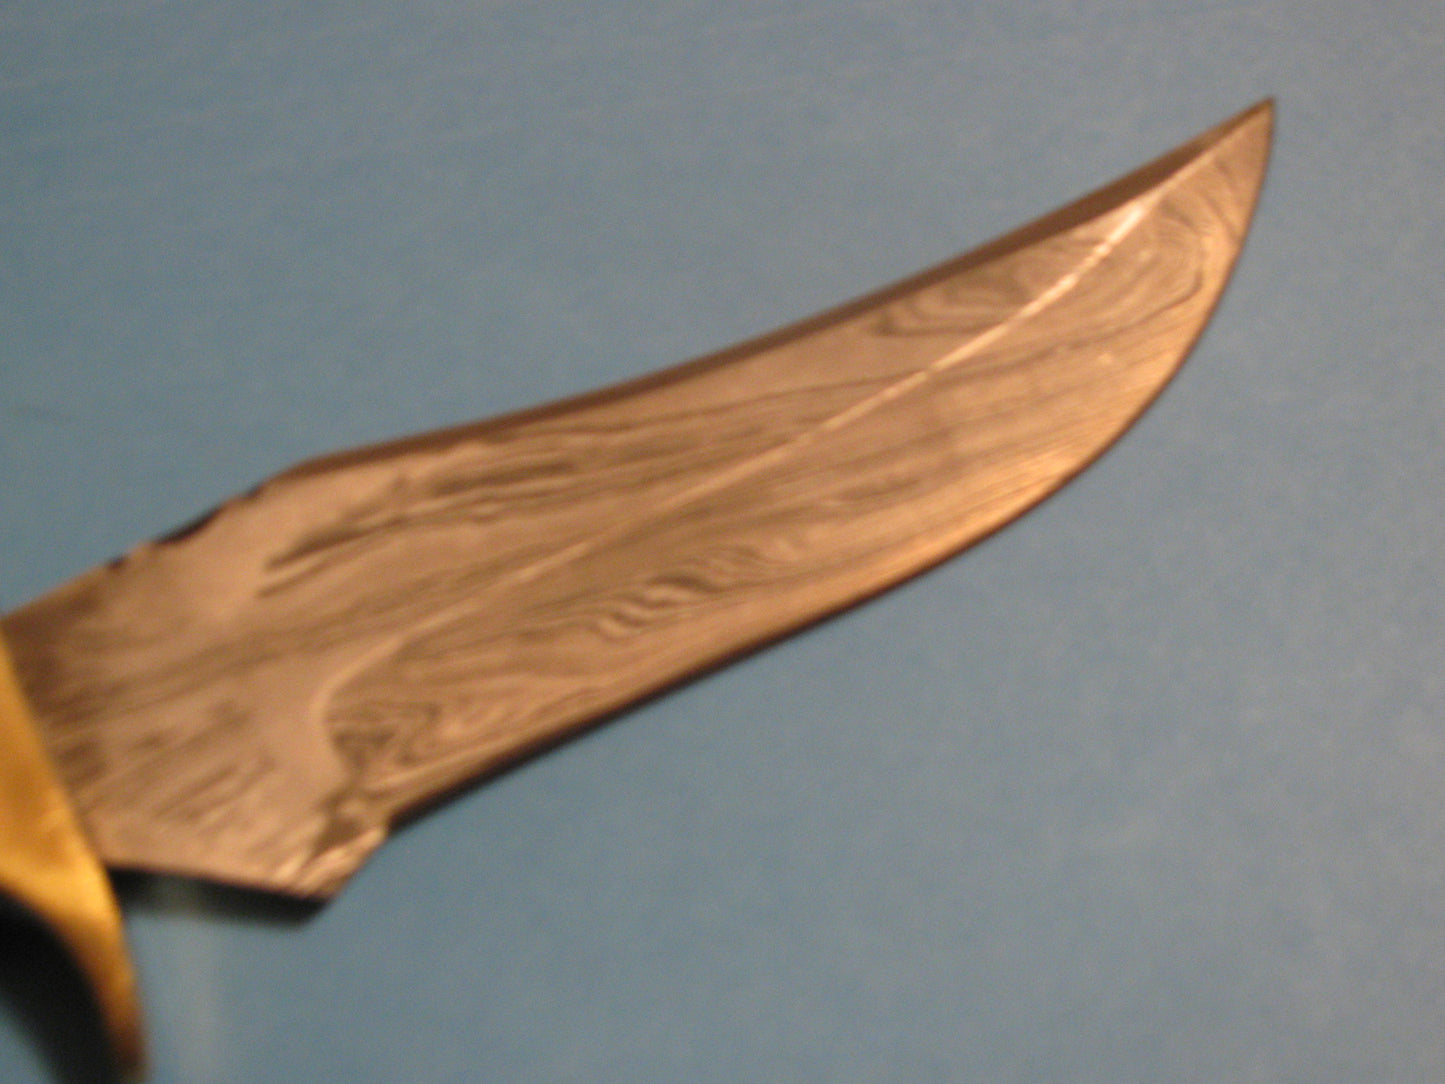 FX-040 IMPALA HANDLE DAMASCUS HUNTING KNIFE